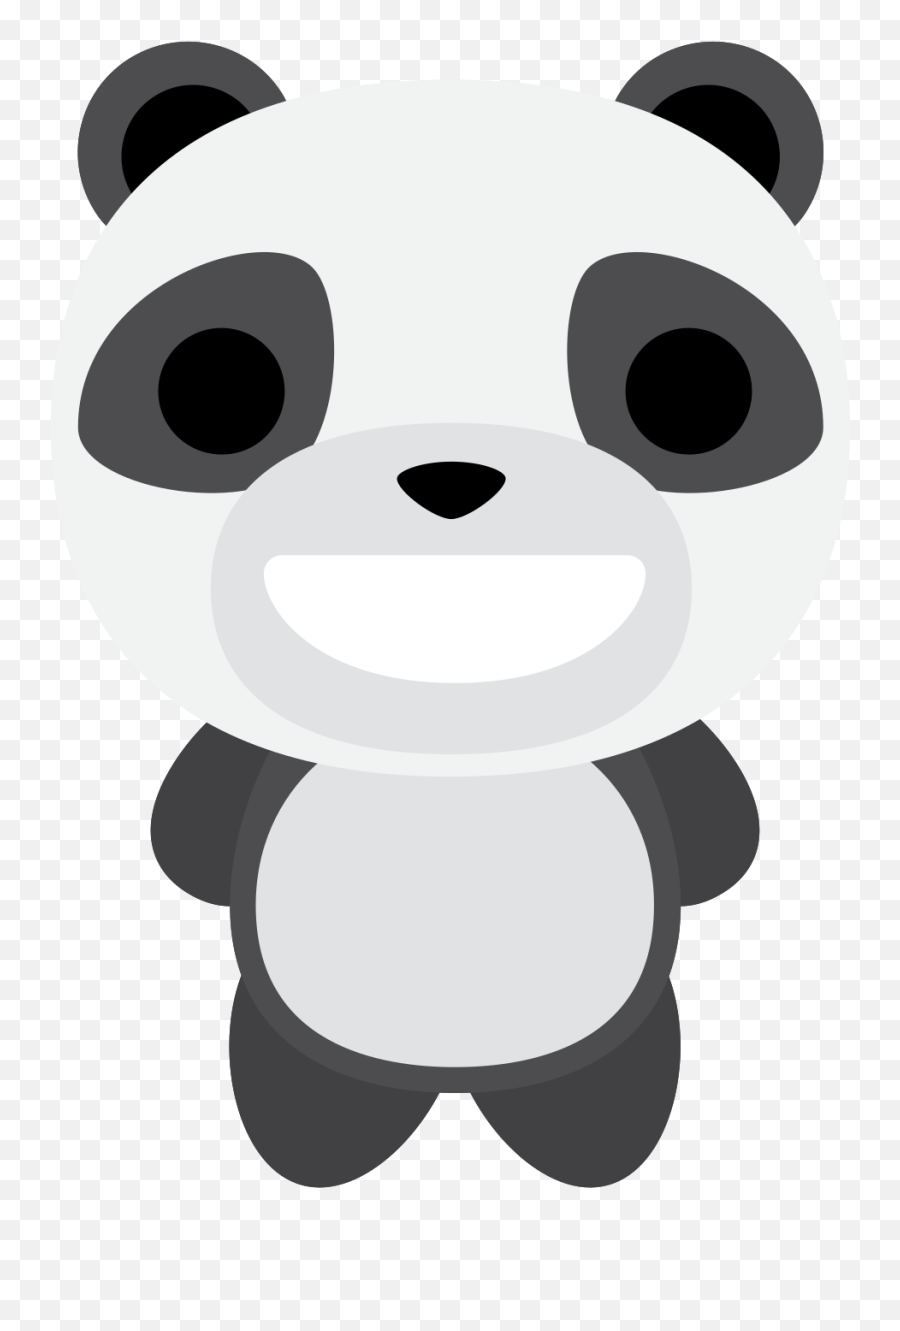 Free Emoji Panda Big Smile Png With - Panda Png,Big Eye Emoji